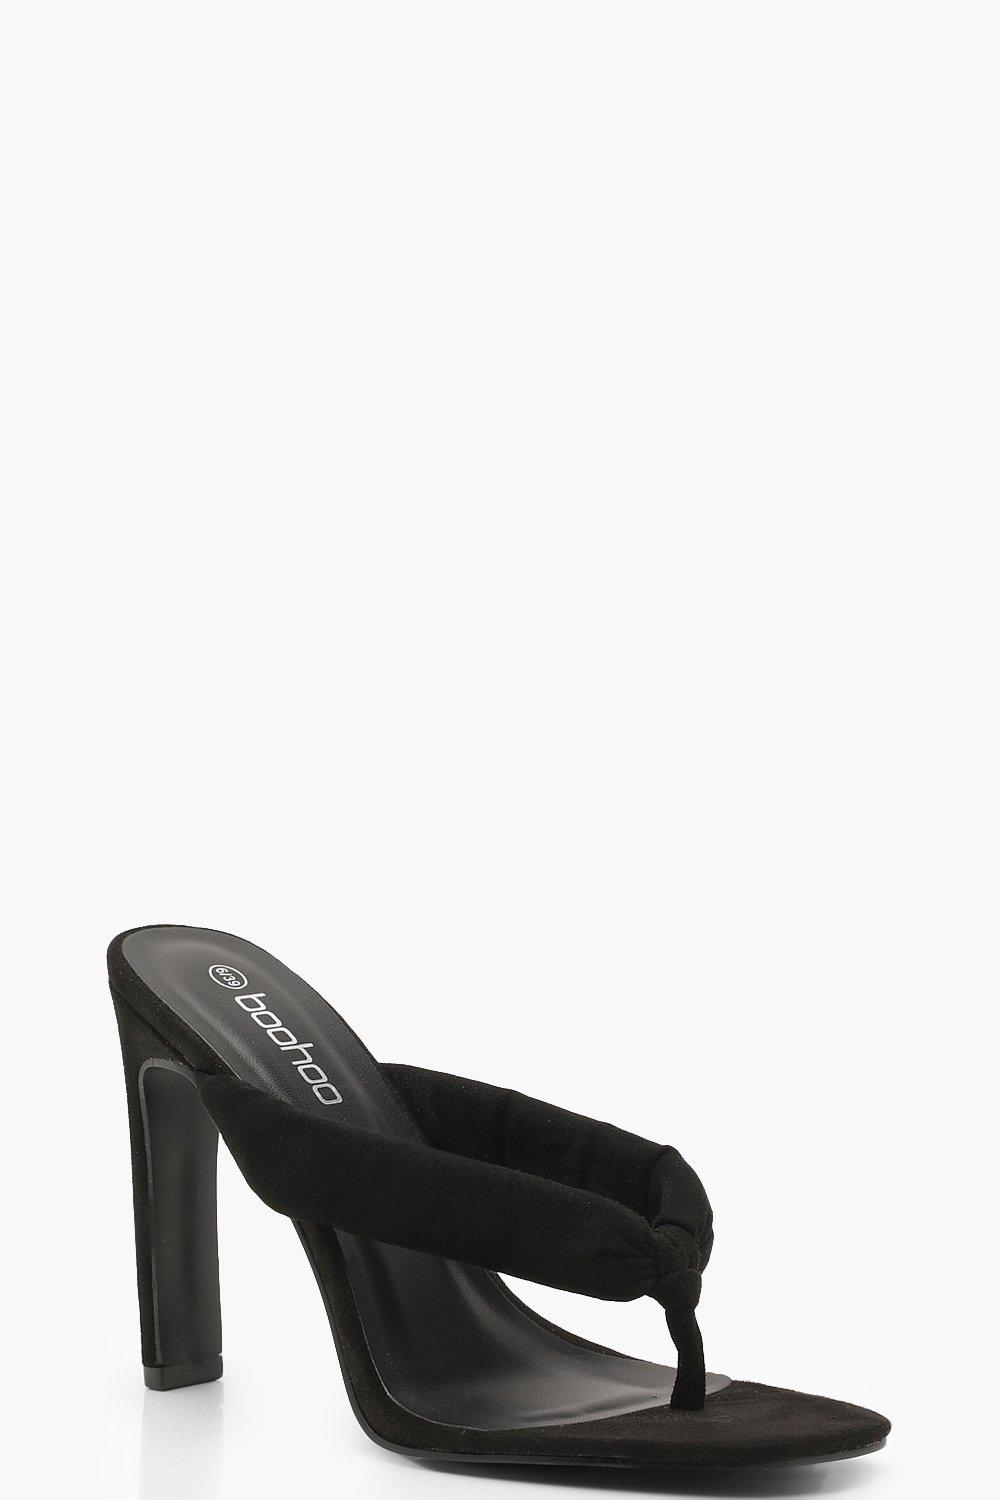 black heel mule sandals